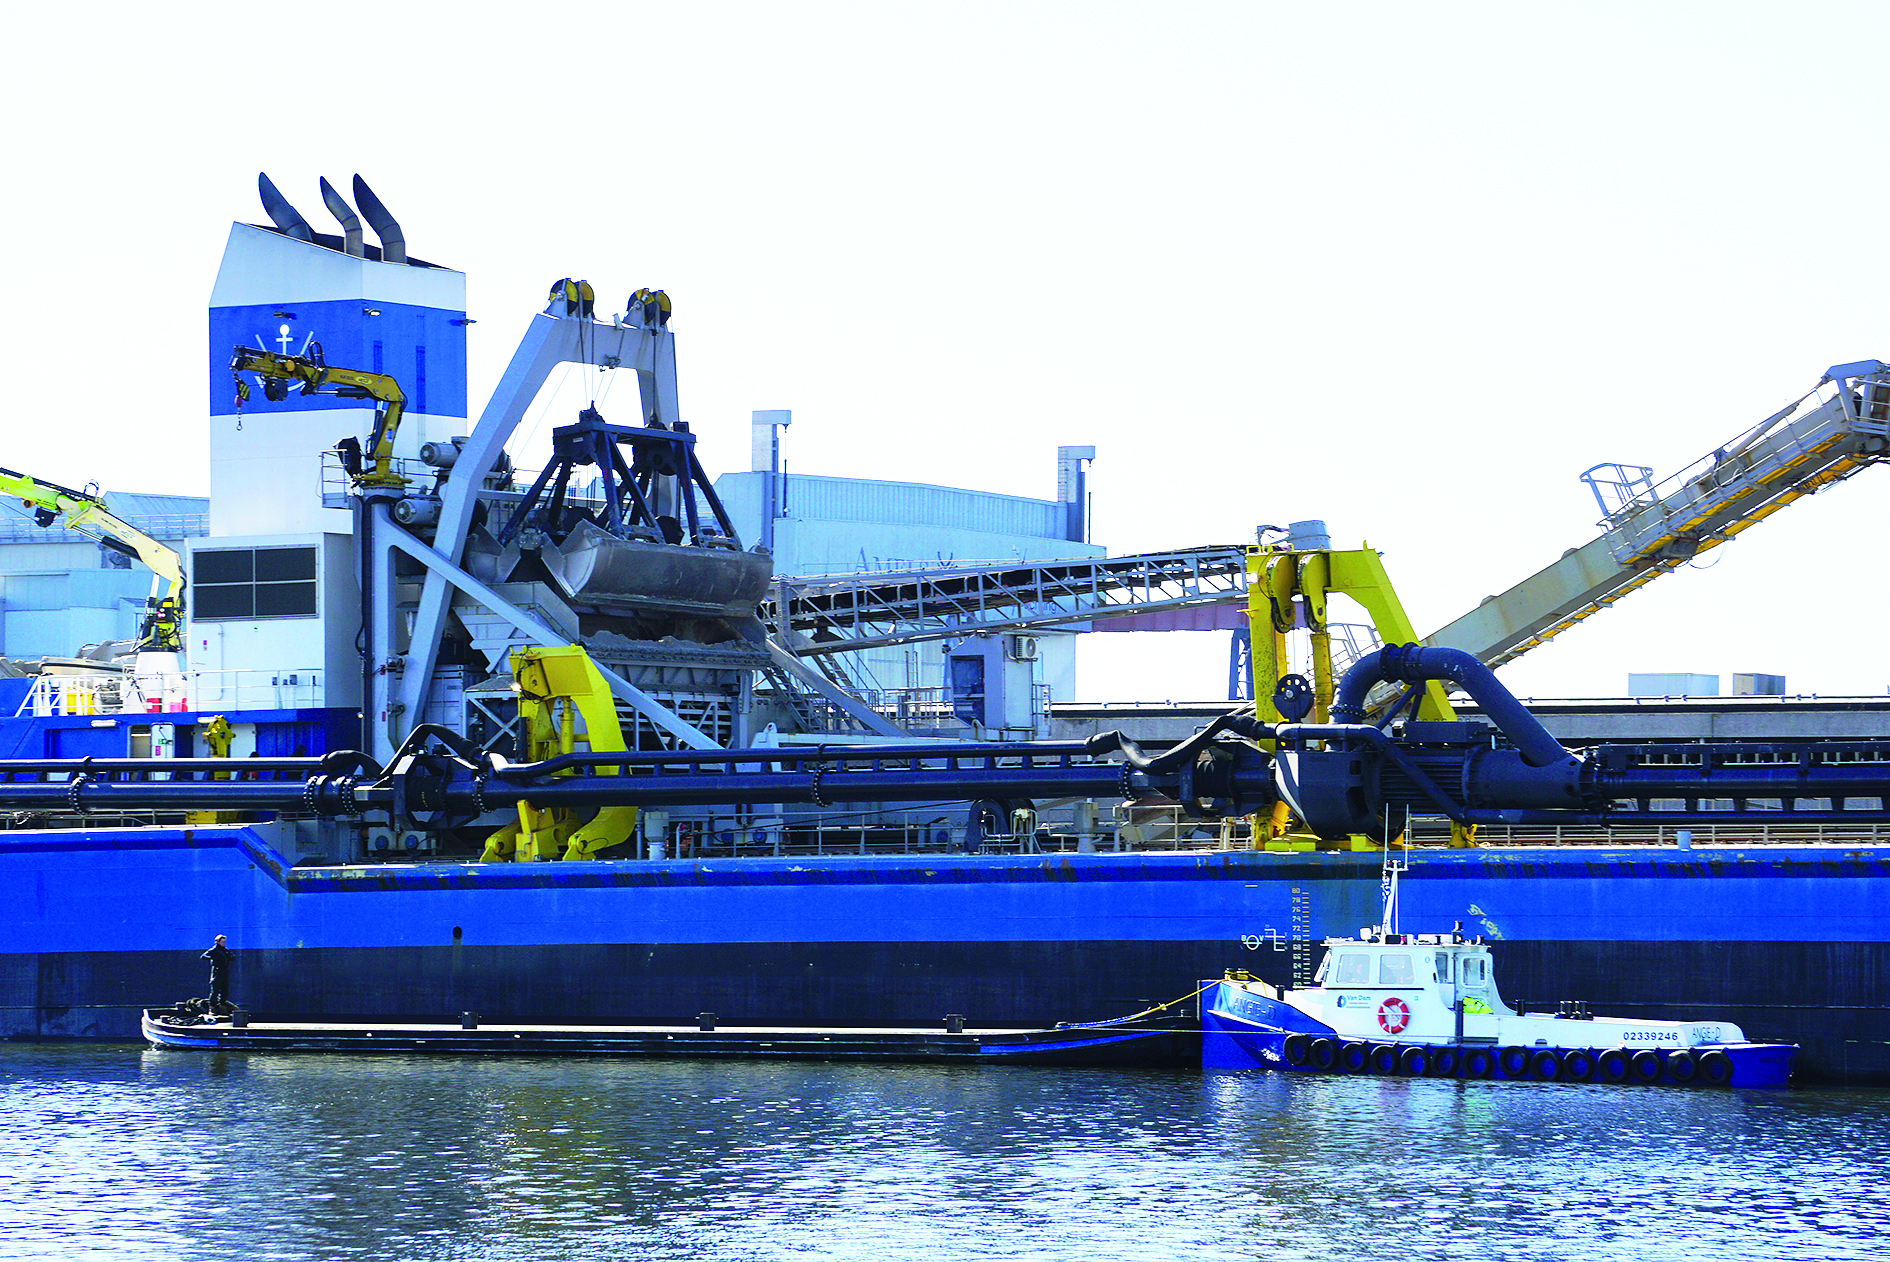 Met de volledig nieuw opgebouwde vlet wil Van Dam Technics grijpers vervoeren om deze vervolgens in de werkplaats in Middelburg te reviseren.